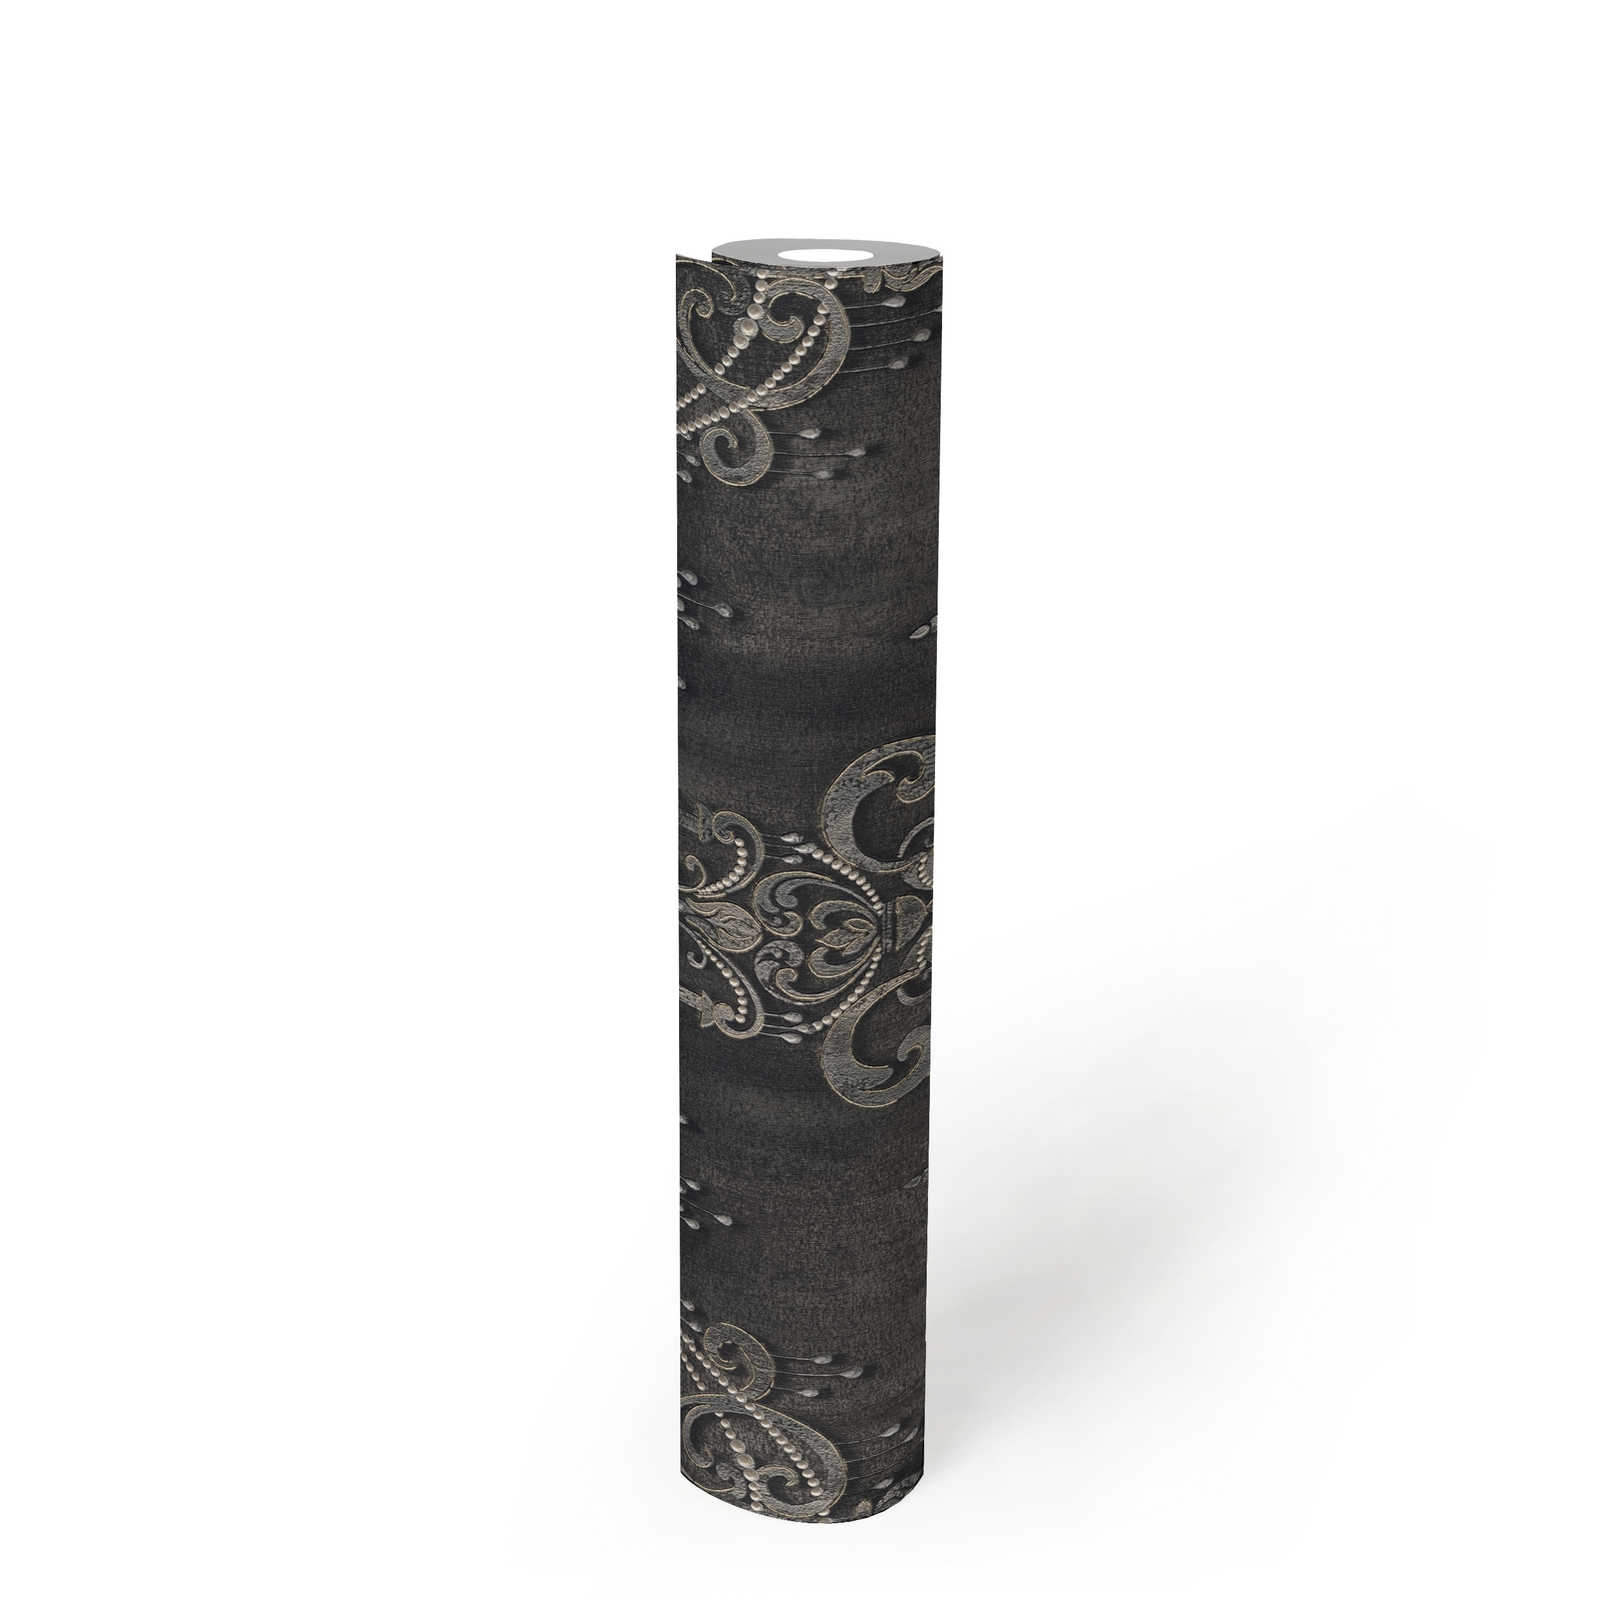             Papier peint noir motif perles, ornements & effet métallique
        